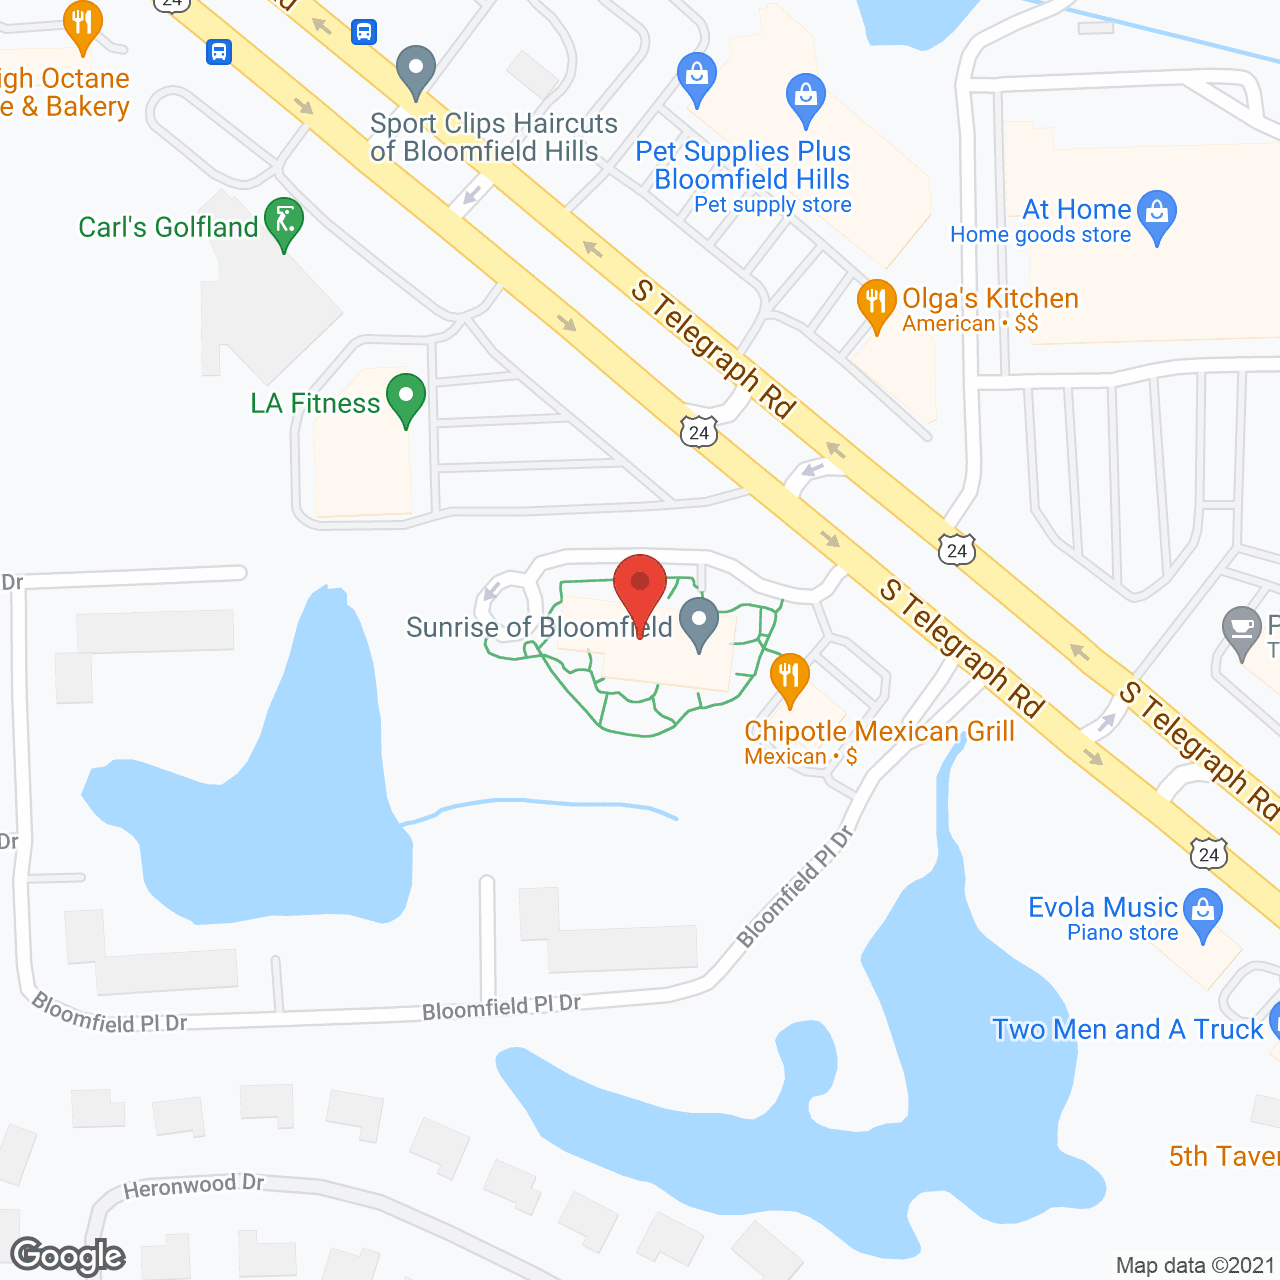 The Bradford in google map